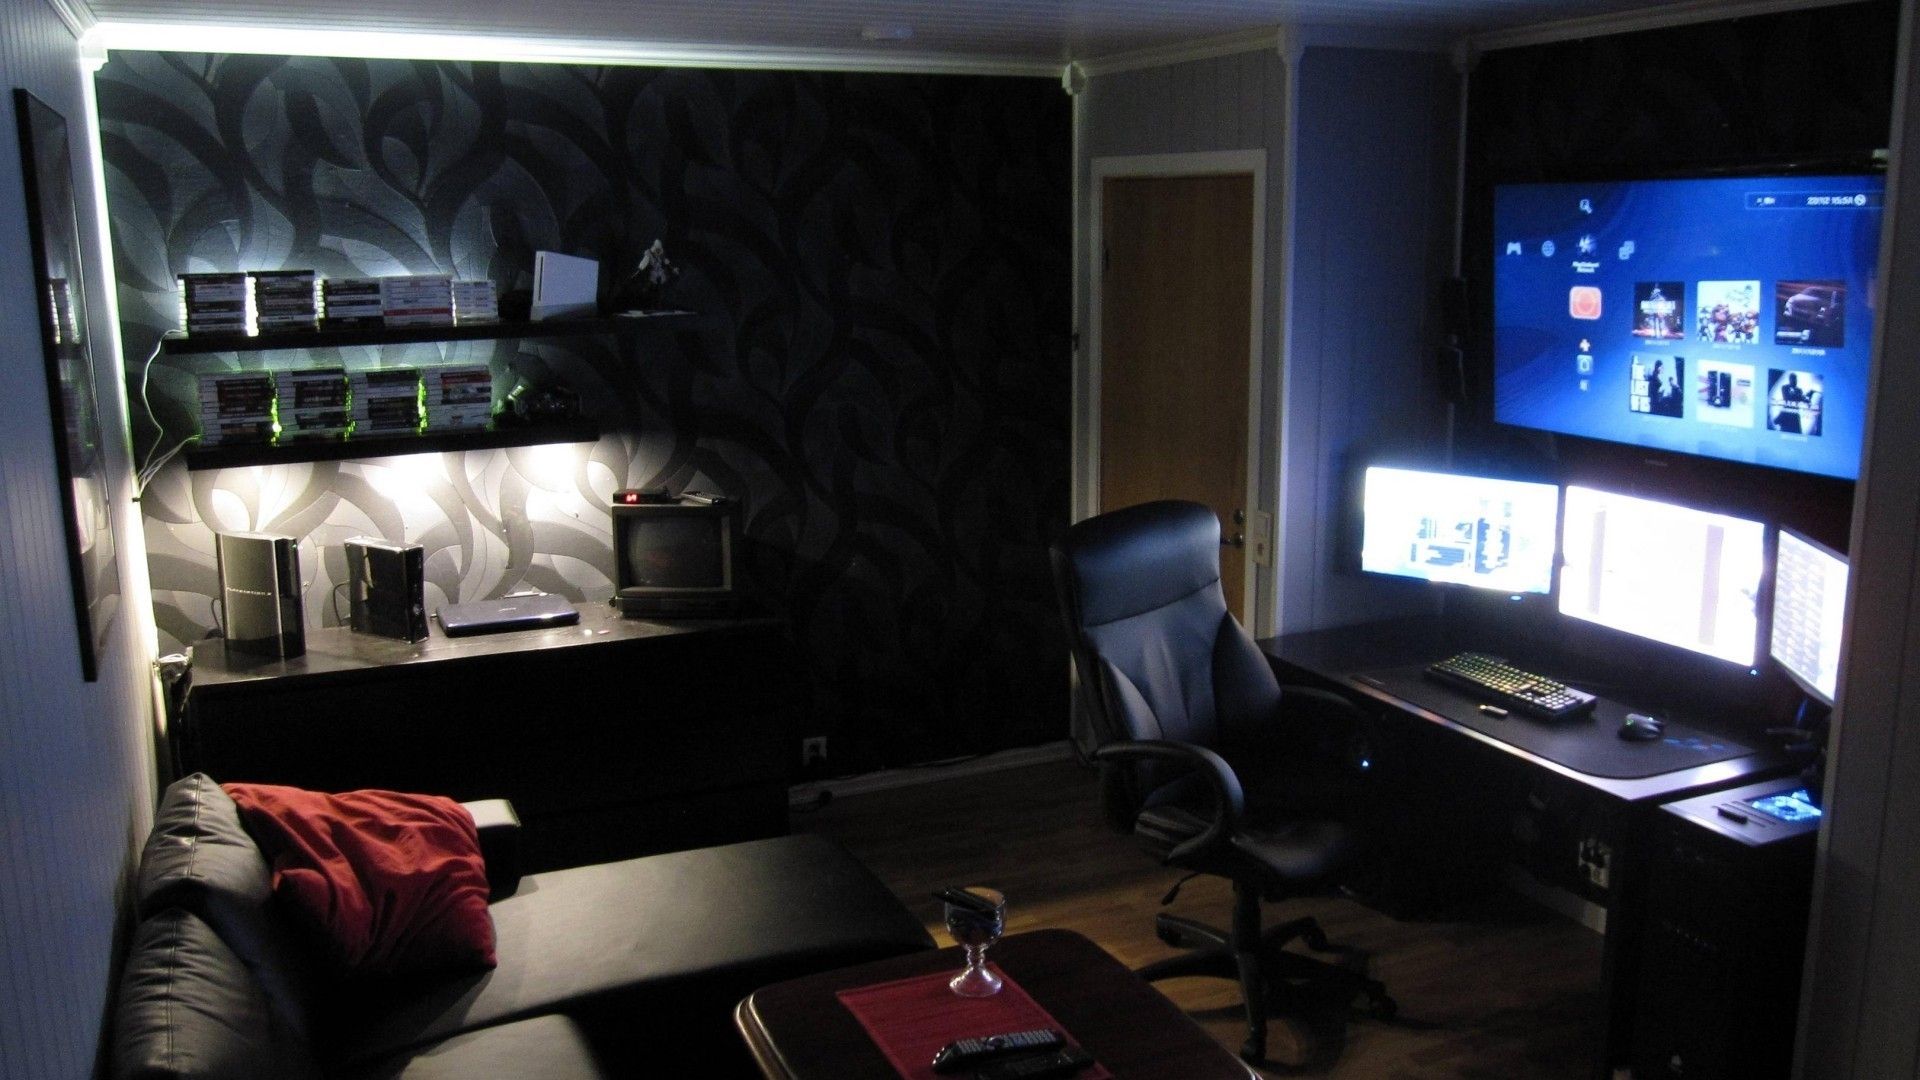 Download Wallpaper, Download 1920x1080 tv interior chairs bedroom